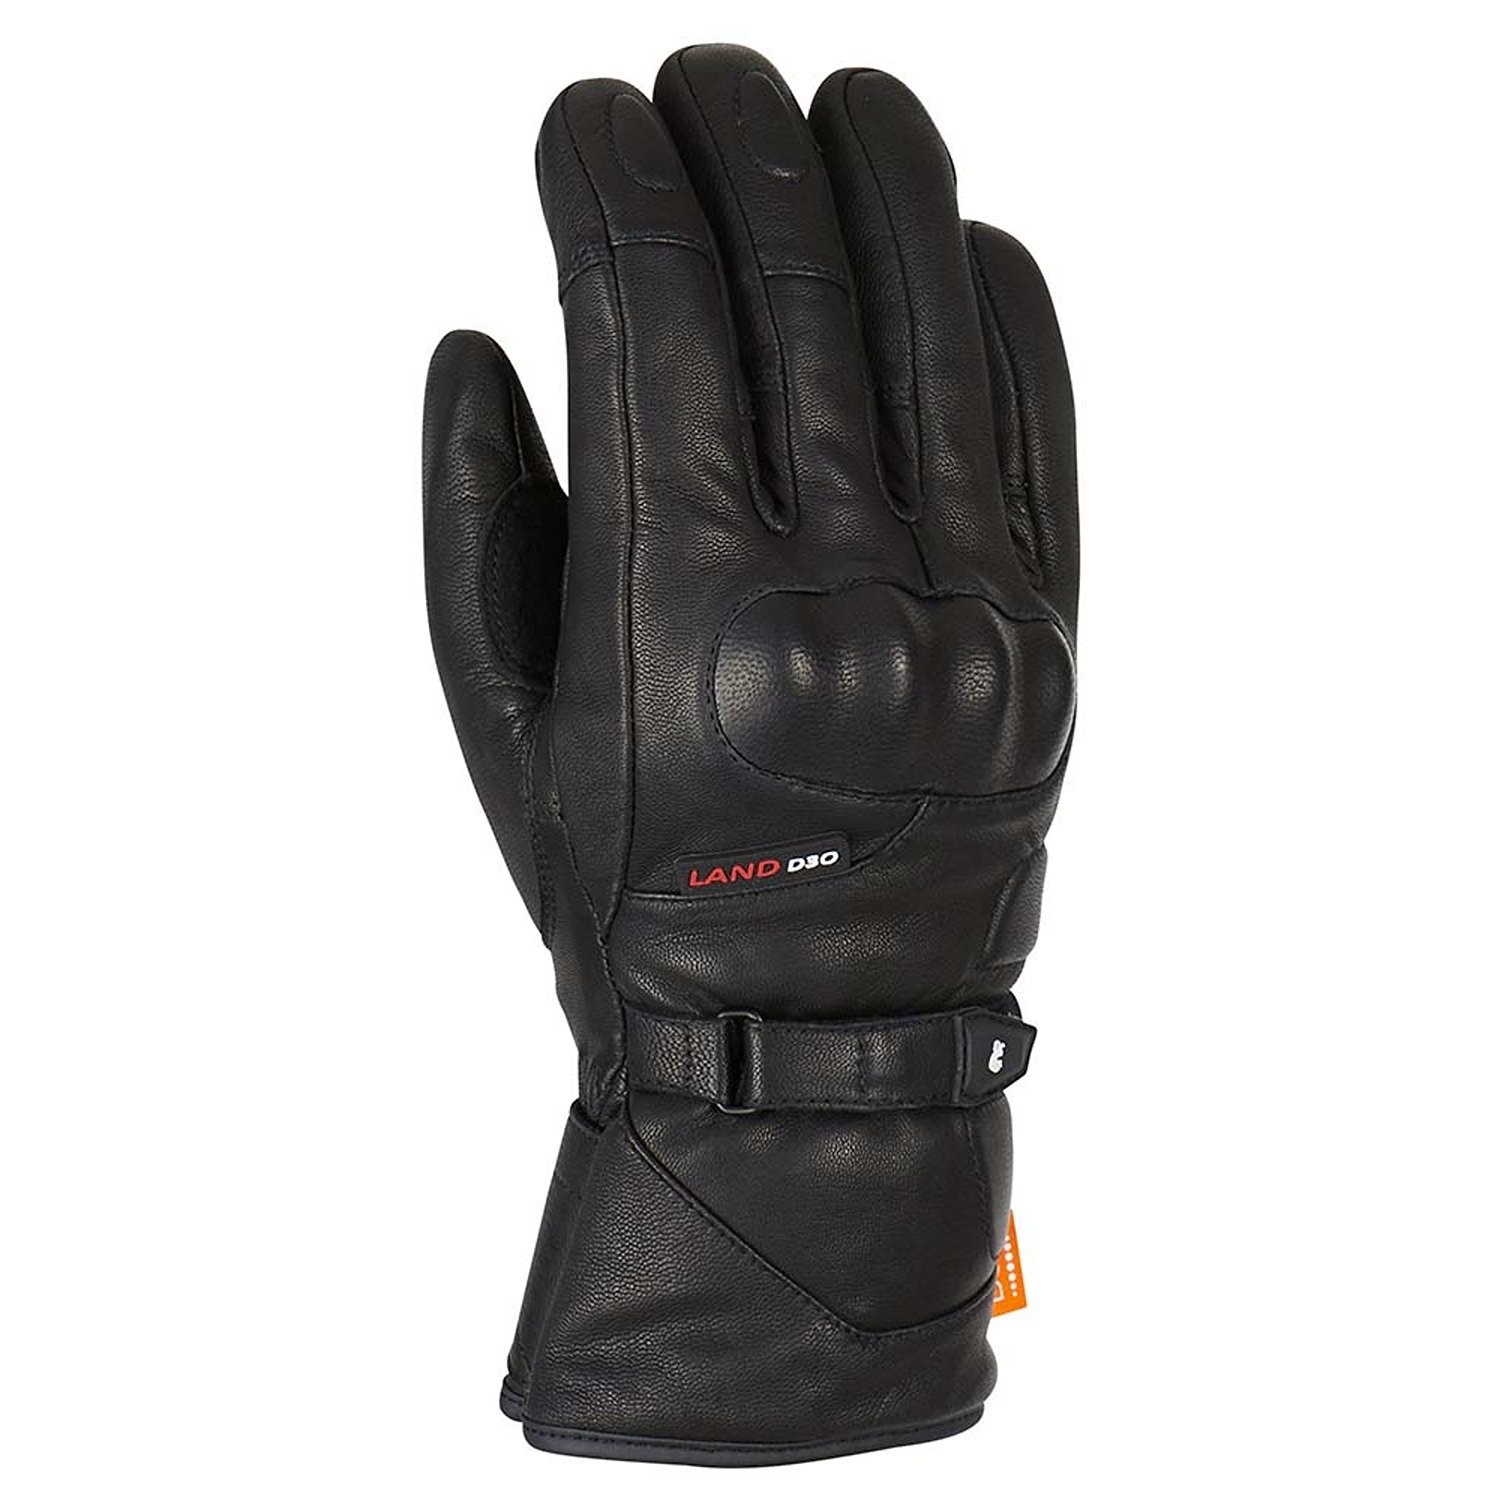 Image of Furygan Land DK D30 Gloves Black Taille M